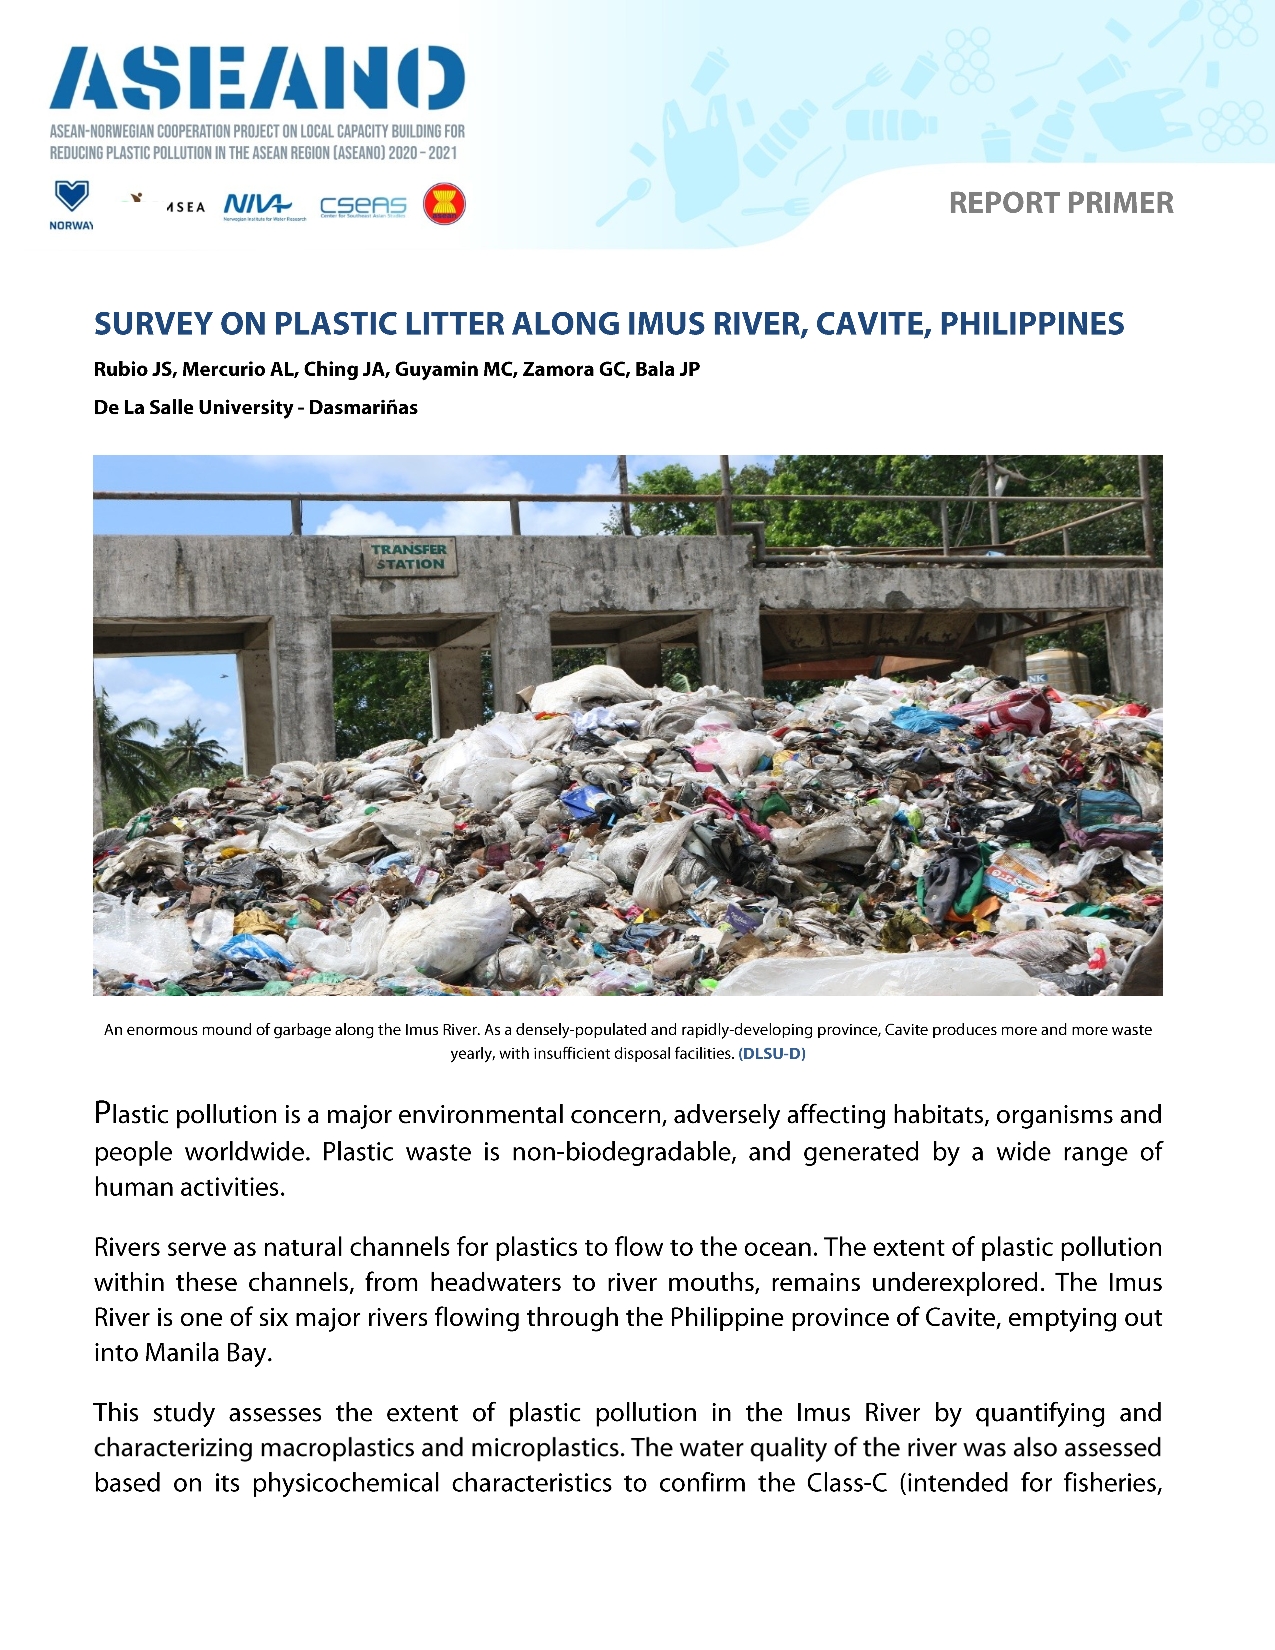 ASEANO Primer: Survey on Plastic Litter Along Imus River